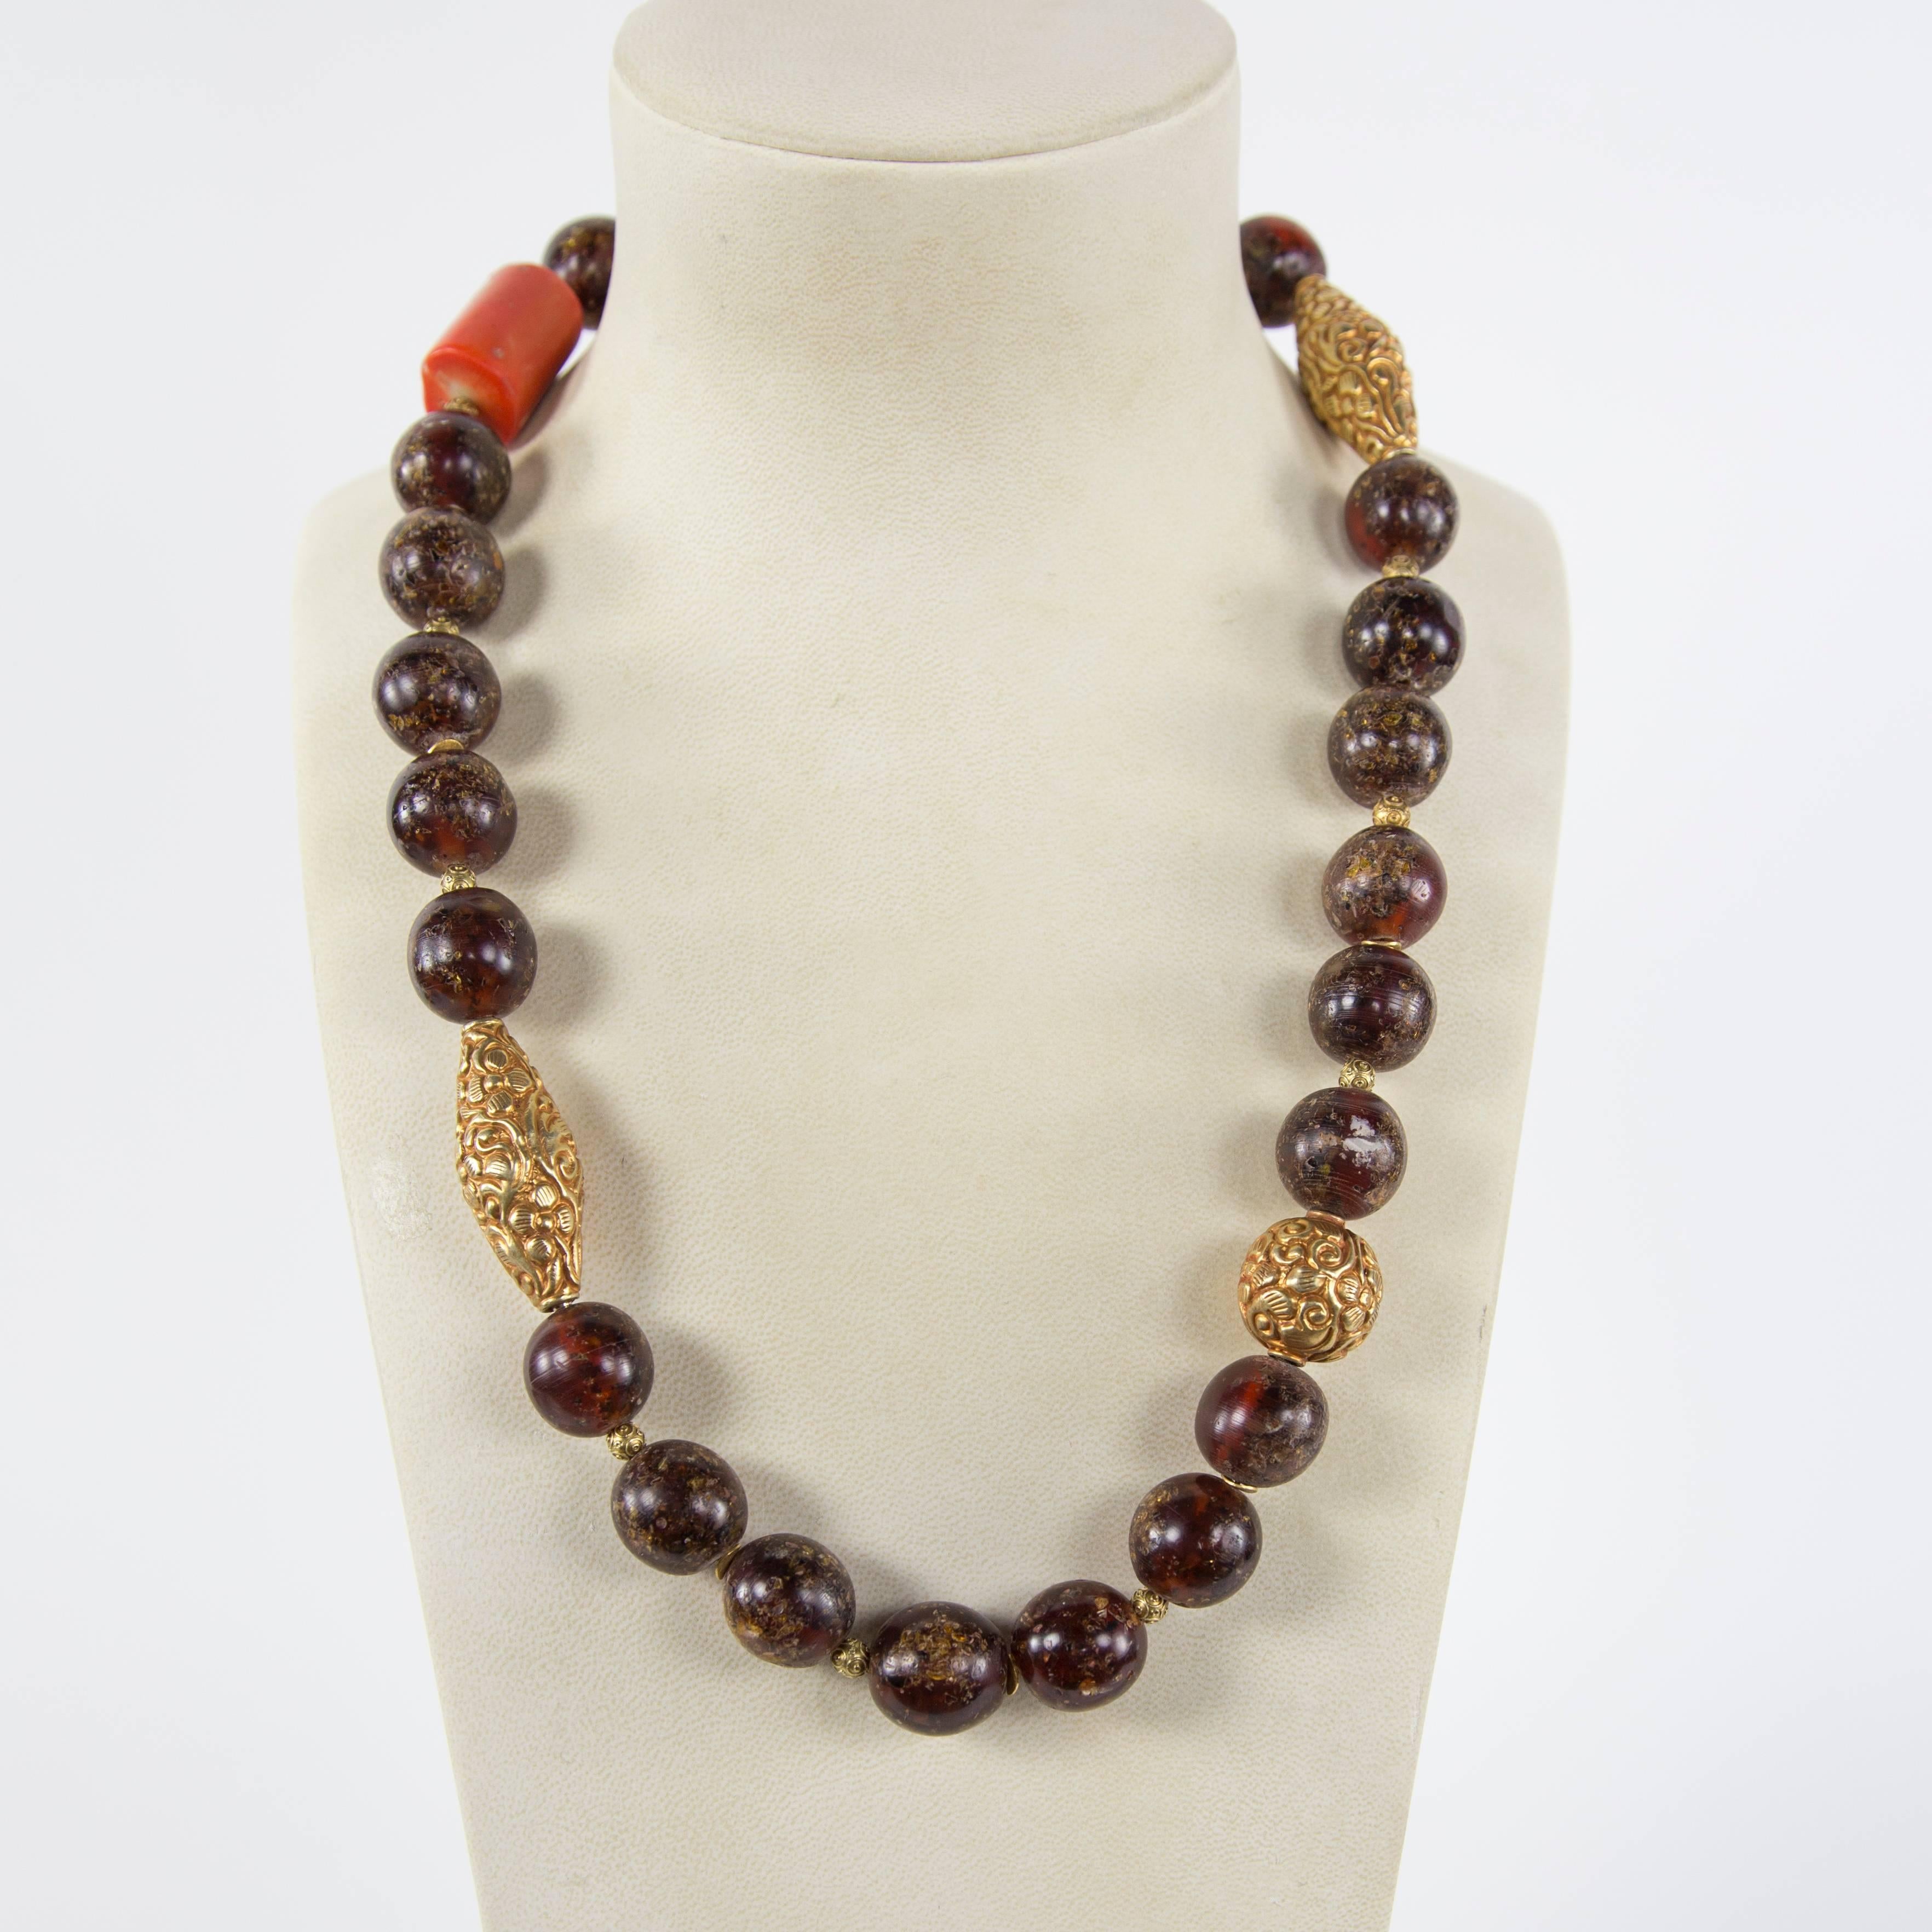 Seltene große tibetische natürliche Copal Bernstein, Koralle und Gold Perle Estate Halskette ... Schön in seiner Einfachheit! Länge der Halskette 28